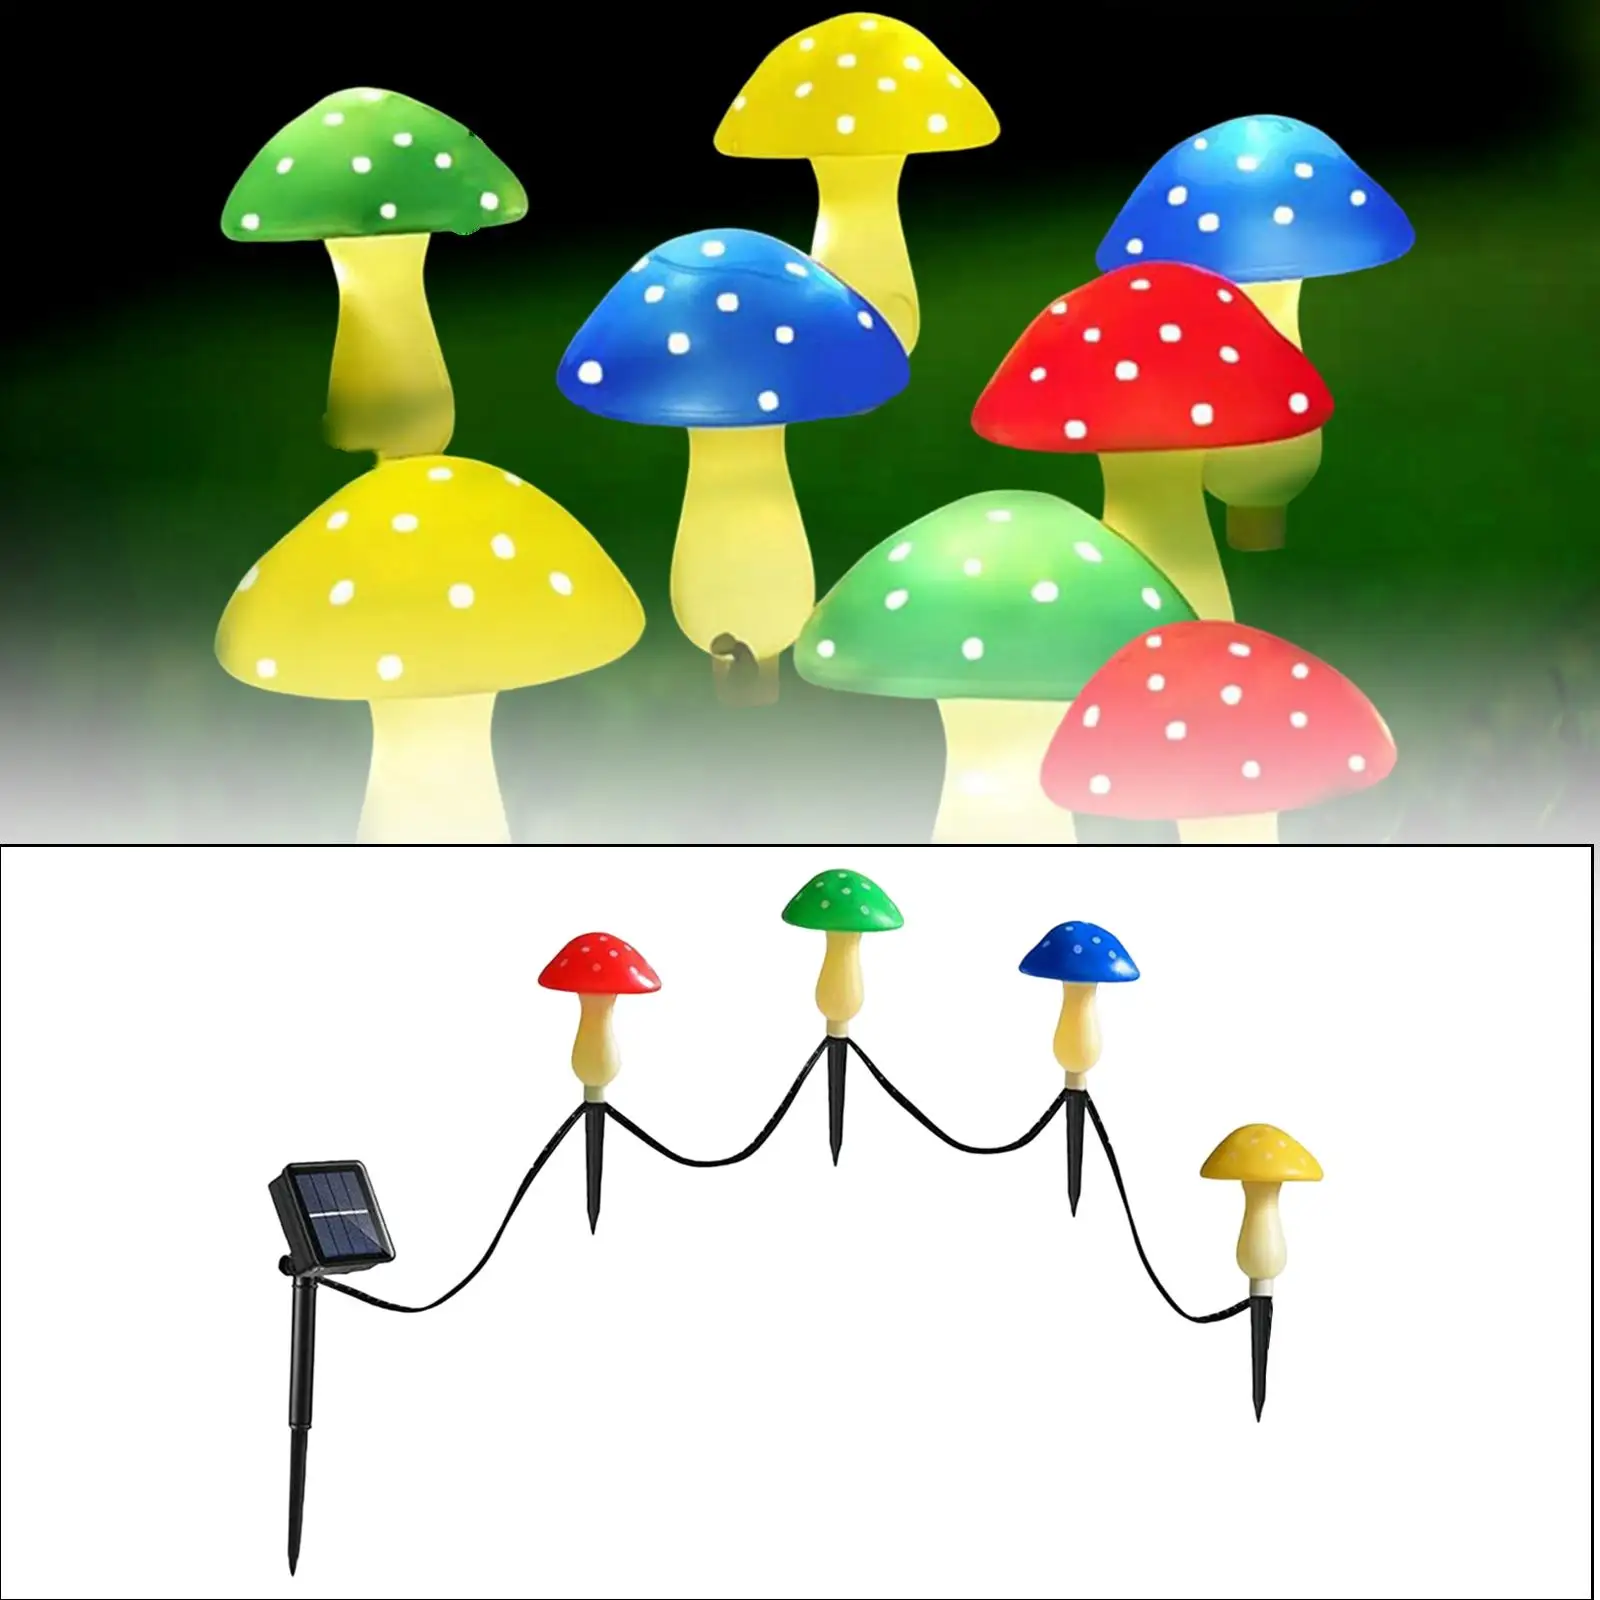 LED Waterproof Mushroom Solar Lights Garden Decorative Outdoor Solar Patio Lights